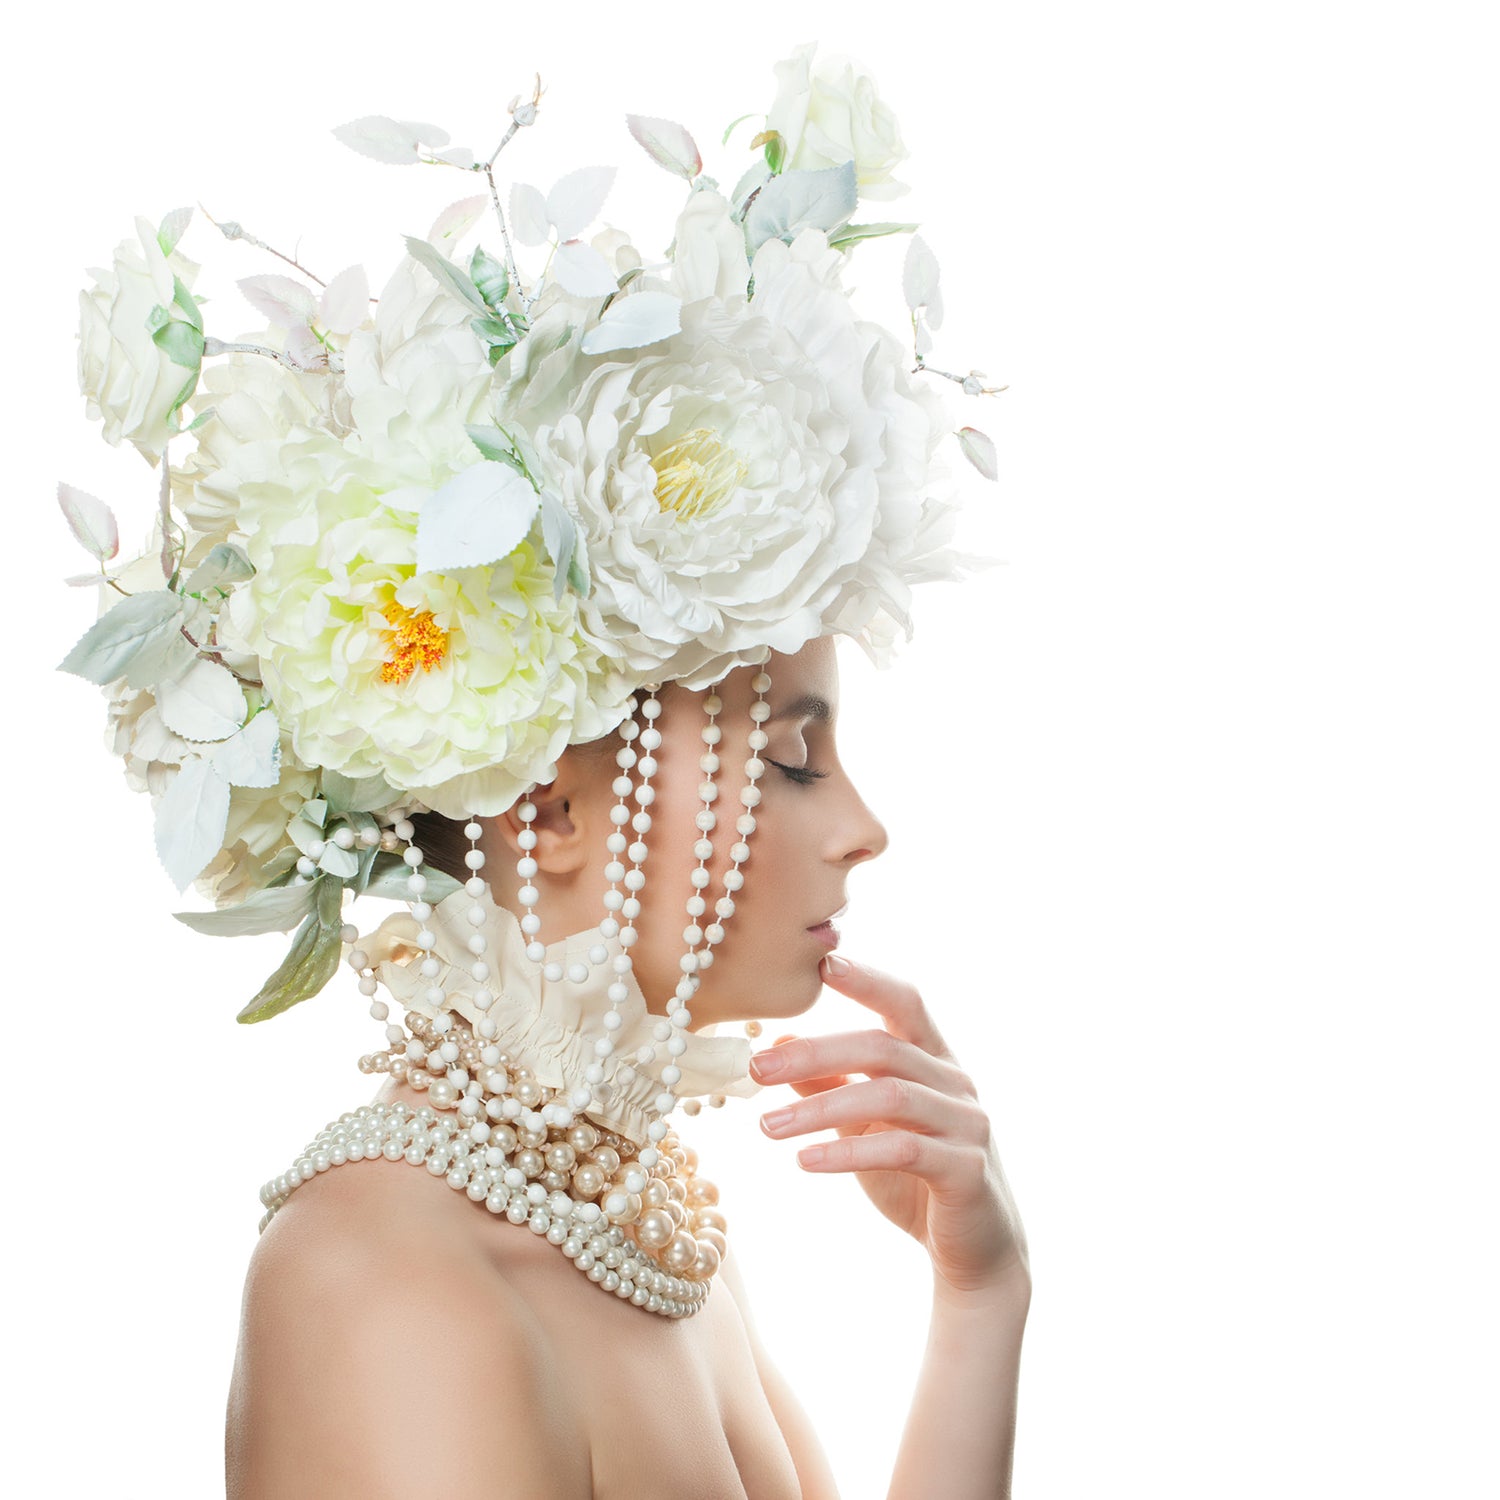 Collier Femme Perle avec des fleurs | Inspirations